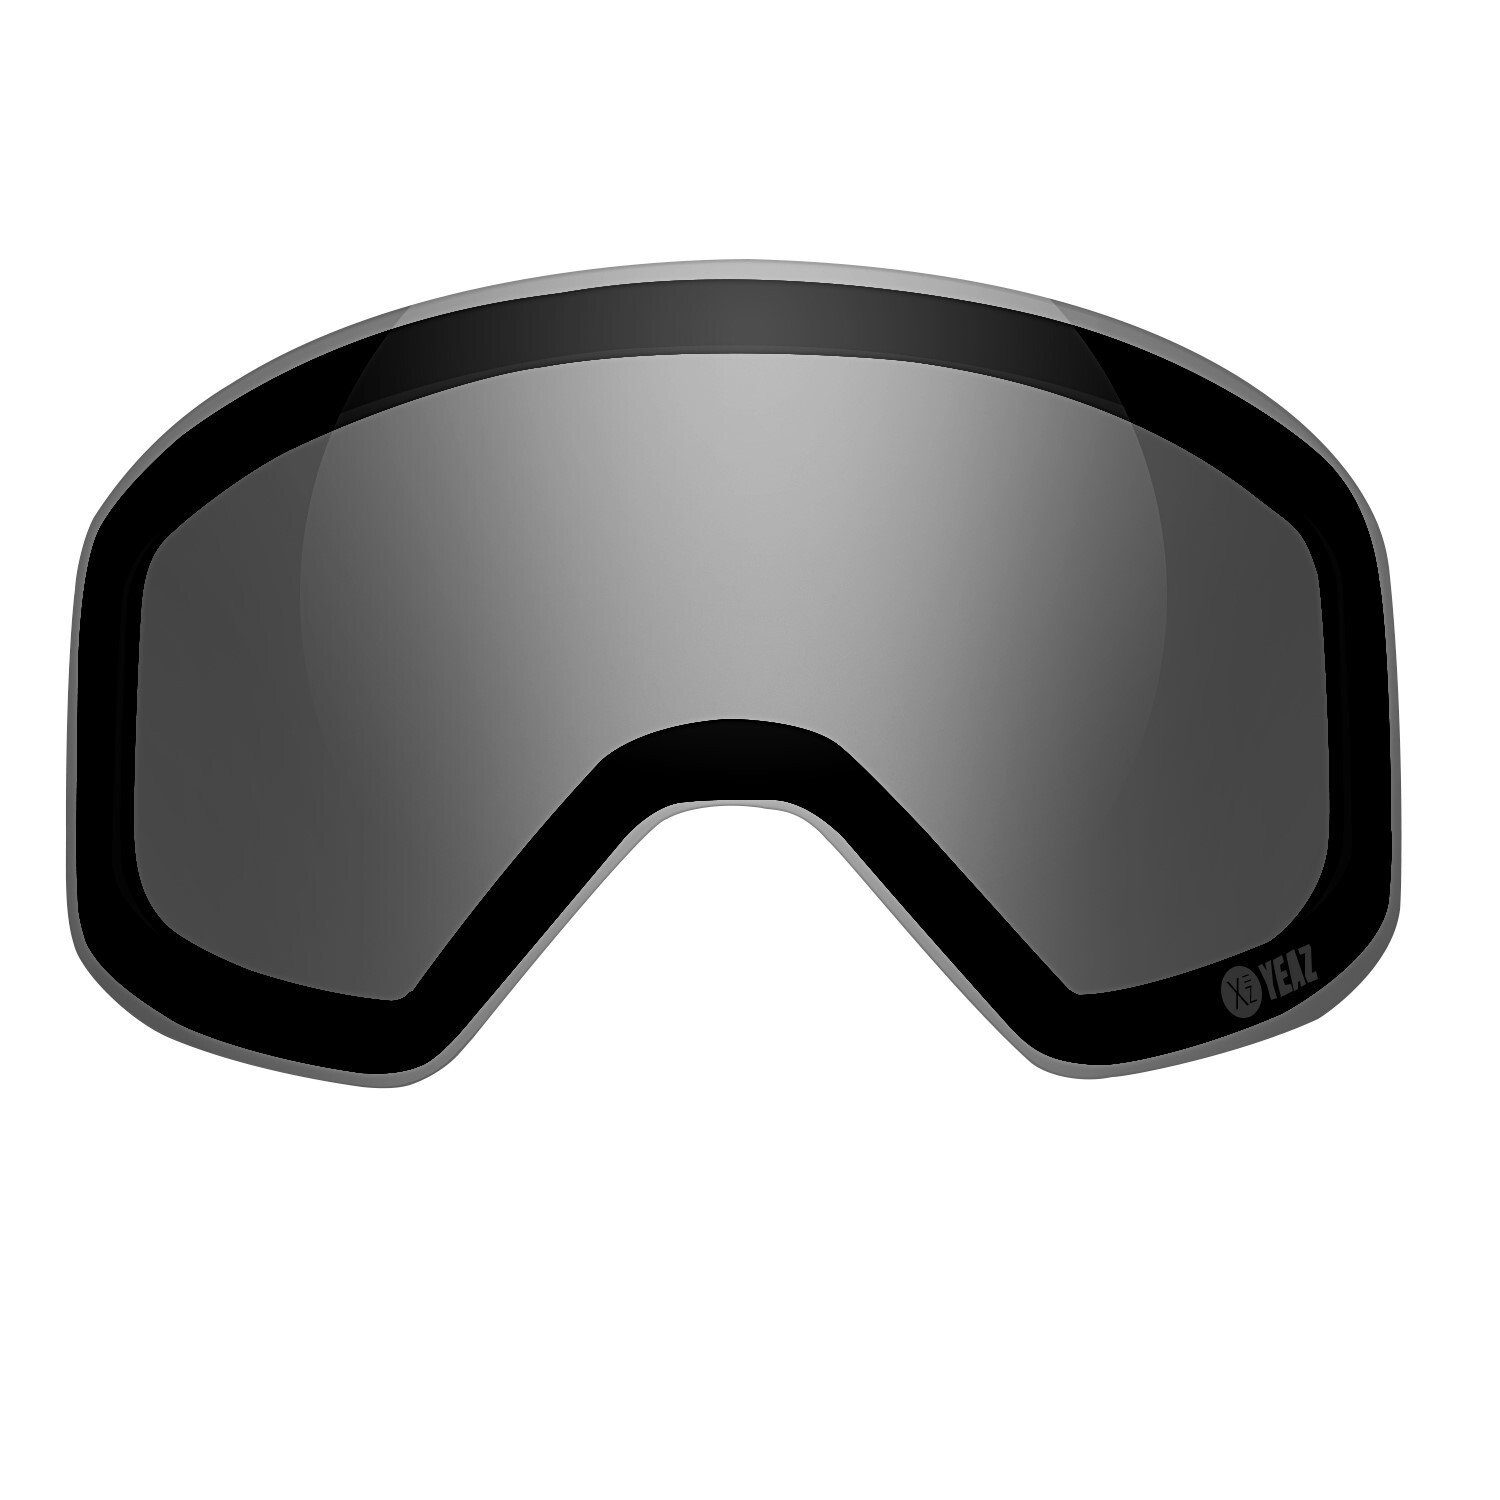 YEAZ Skibrille APEX polarisiertes magnetisches wechselglas, Ersatzglas für APEX Skibrille | Brillen